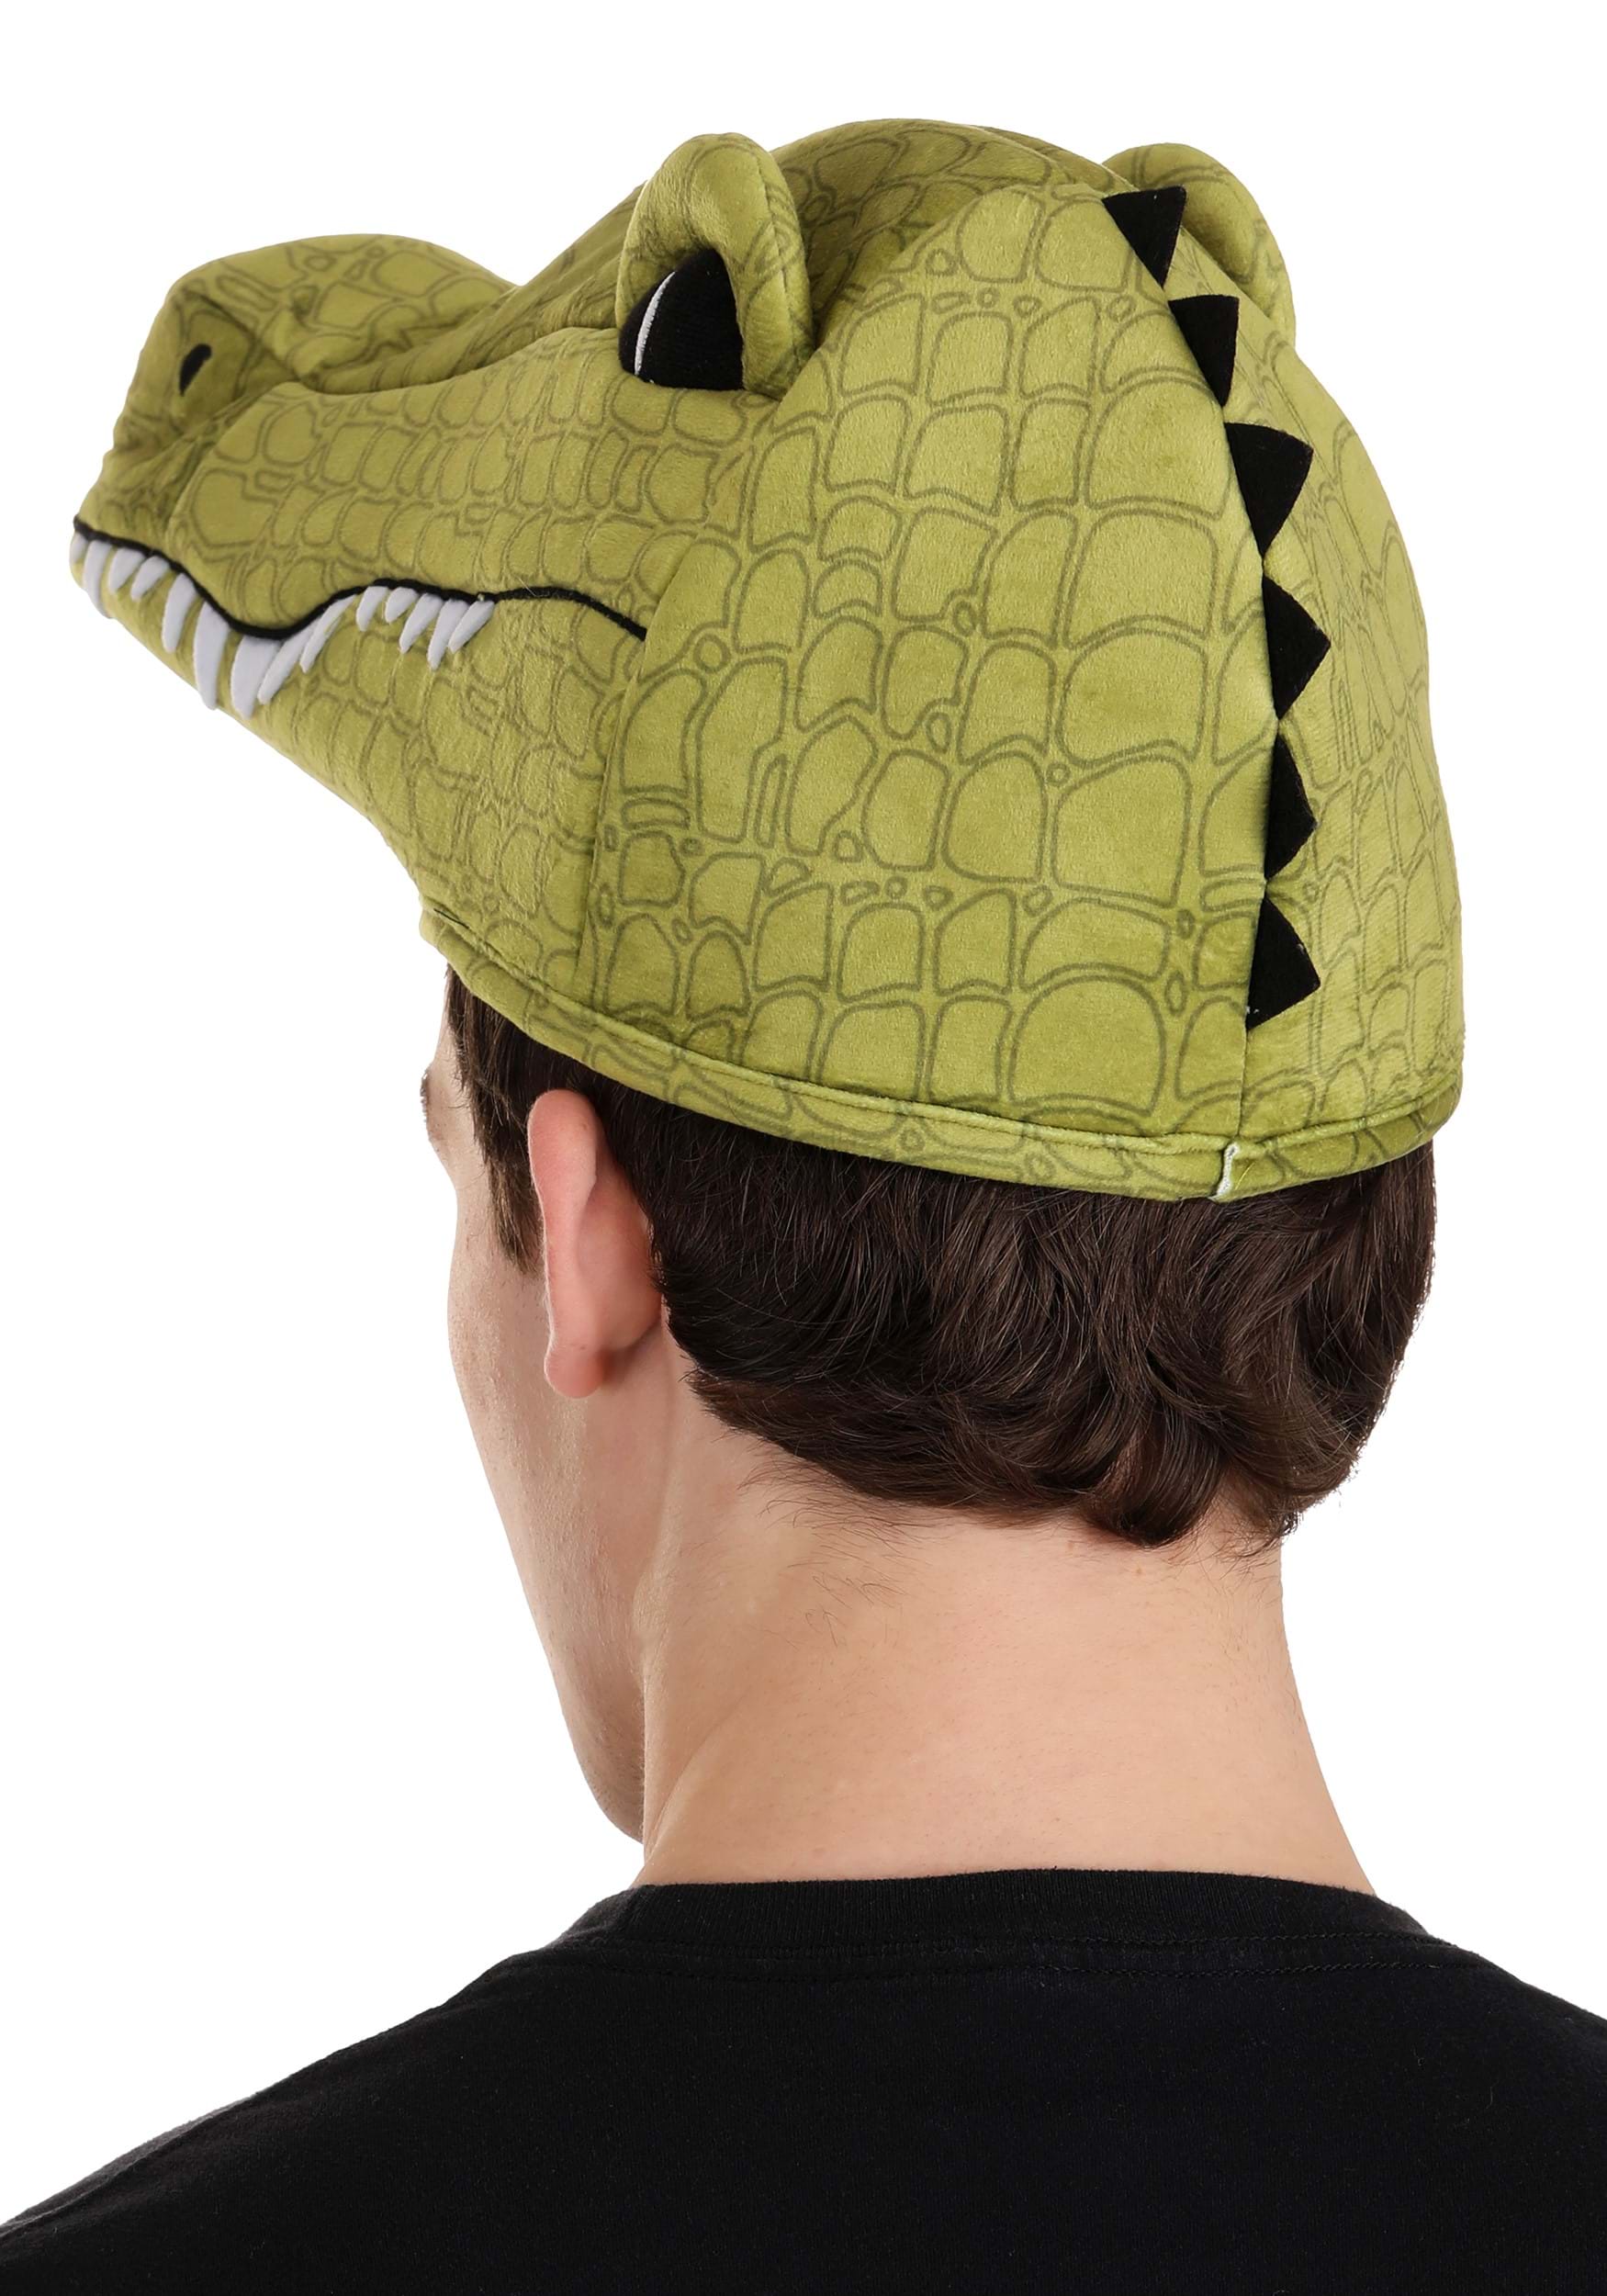 Plush Alligator Hat